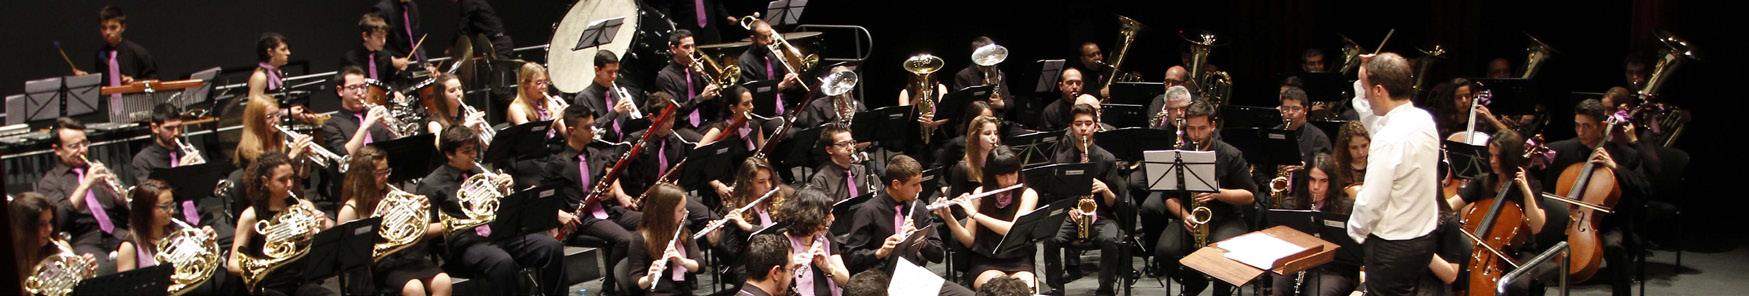 Agrupación Musical San Indalecio La Cañada (Almería) La Agrupación Musical San Indalecio surge en 1991, comenzando sus actuaciones en 1993, en el que forma parte de la Federación de Bandas de